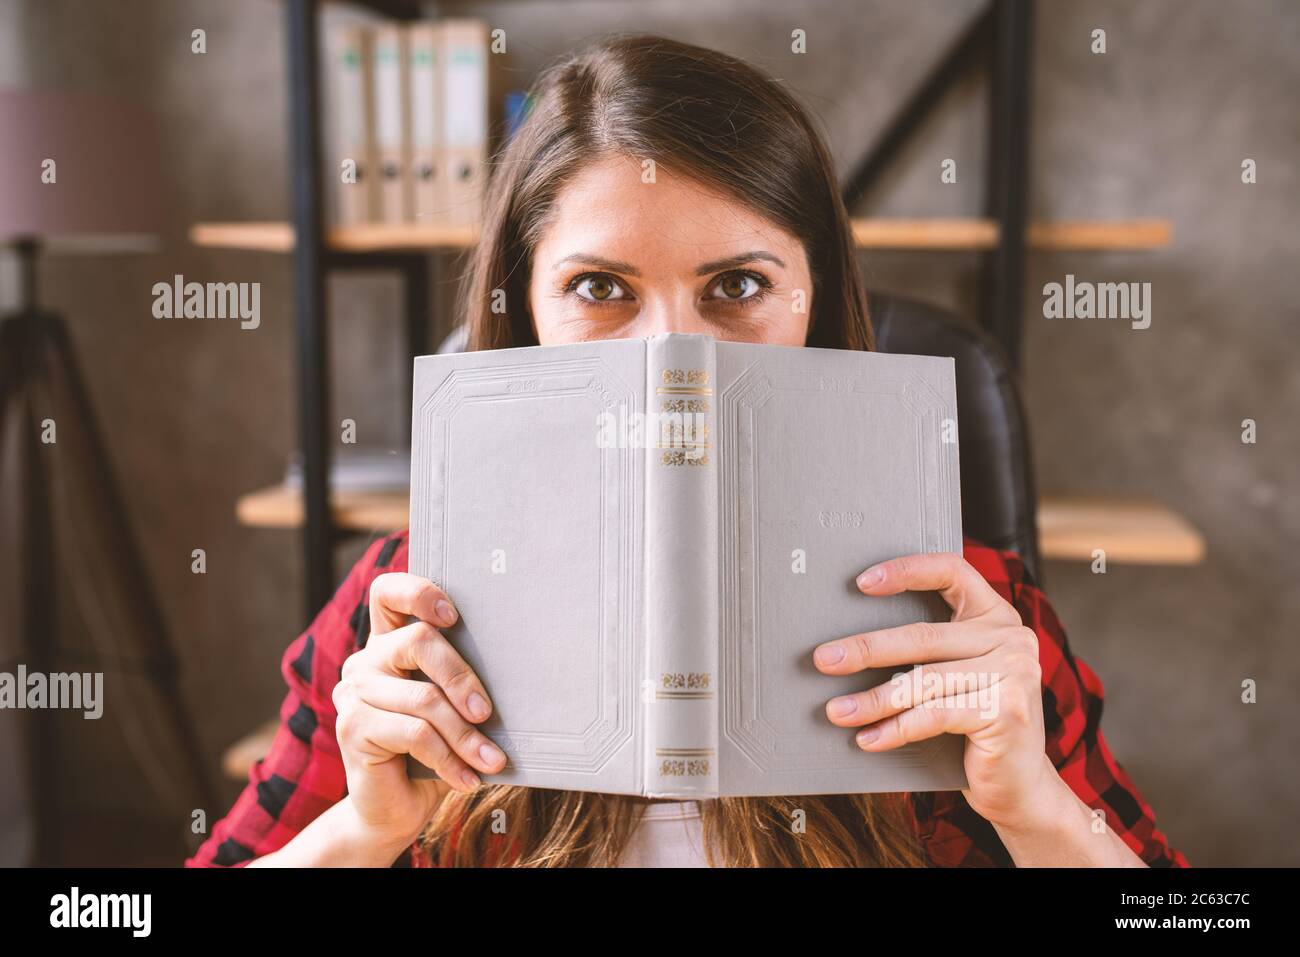 Mädchen ist hinten ein graues Buch versteckt. Konzept der Neugier Stockfoto